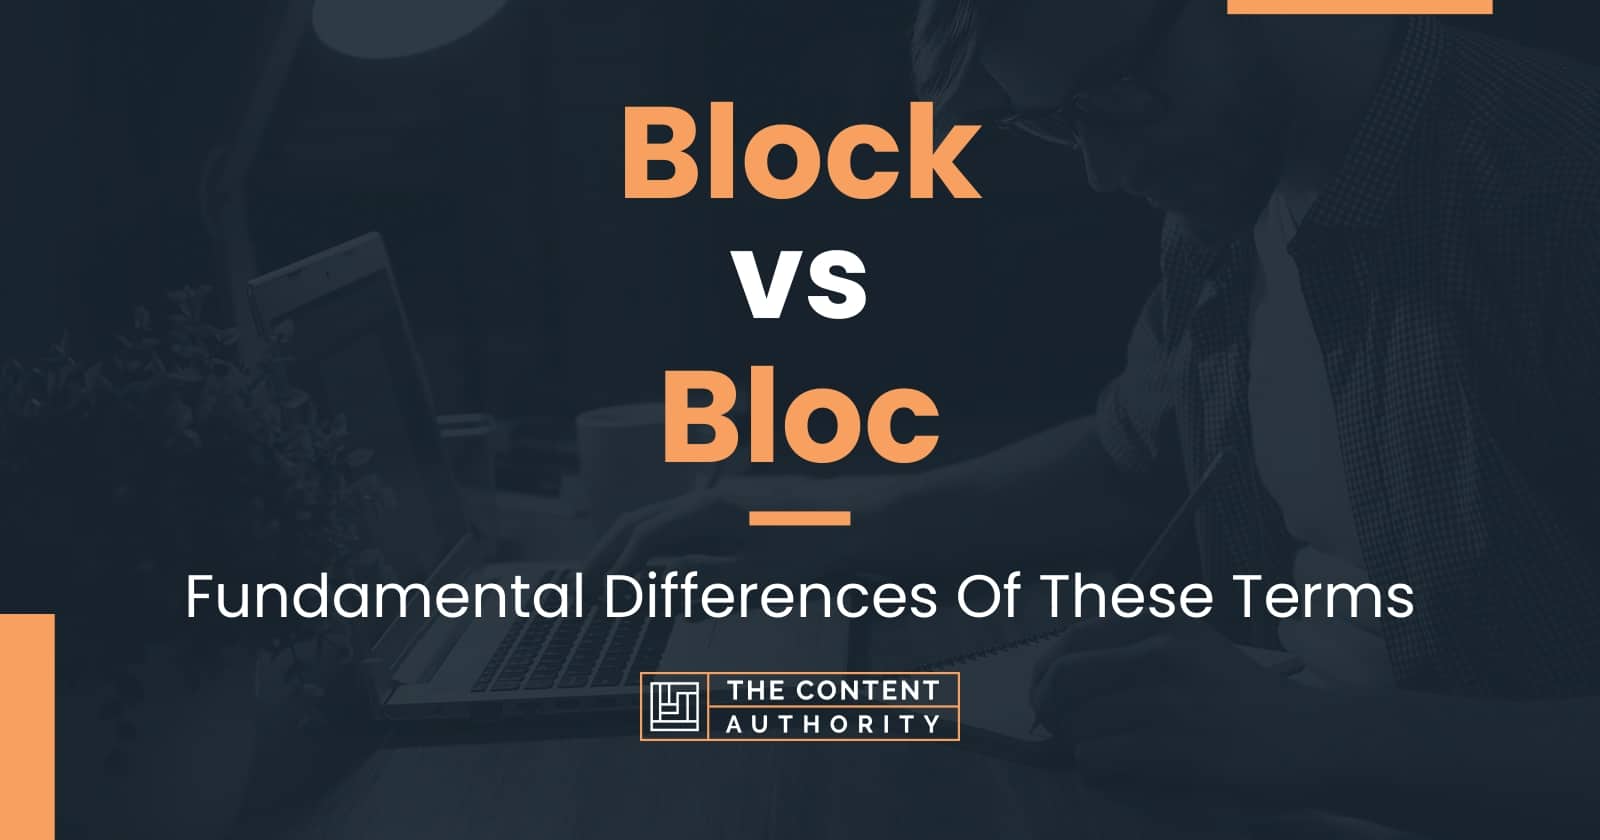 Bloc or Block?